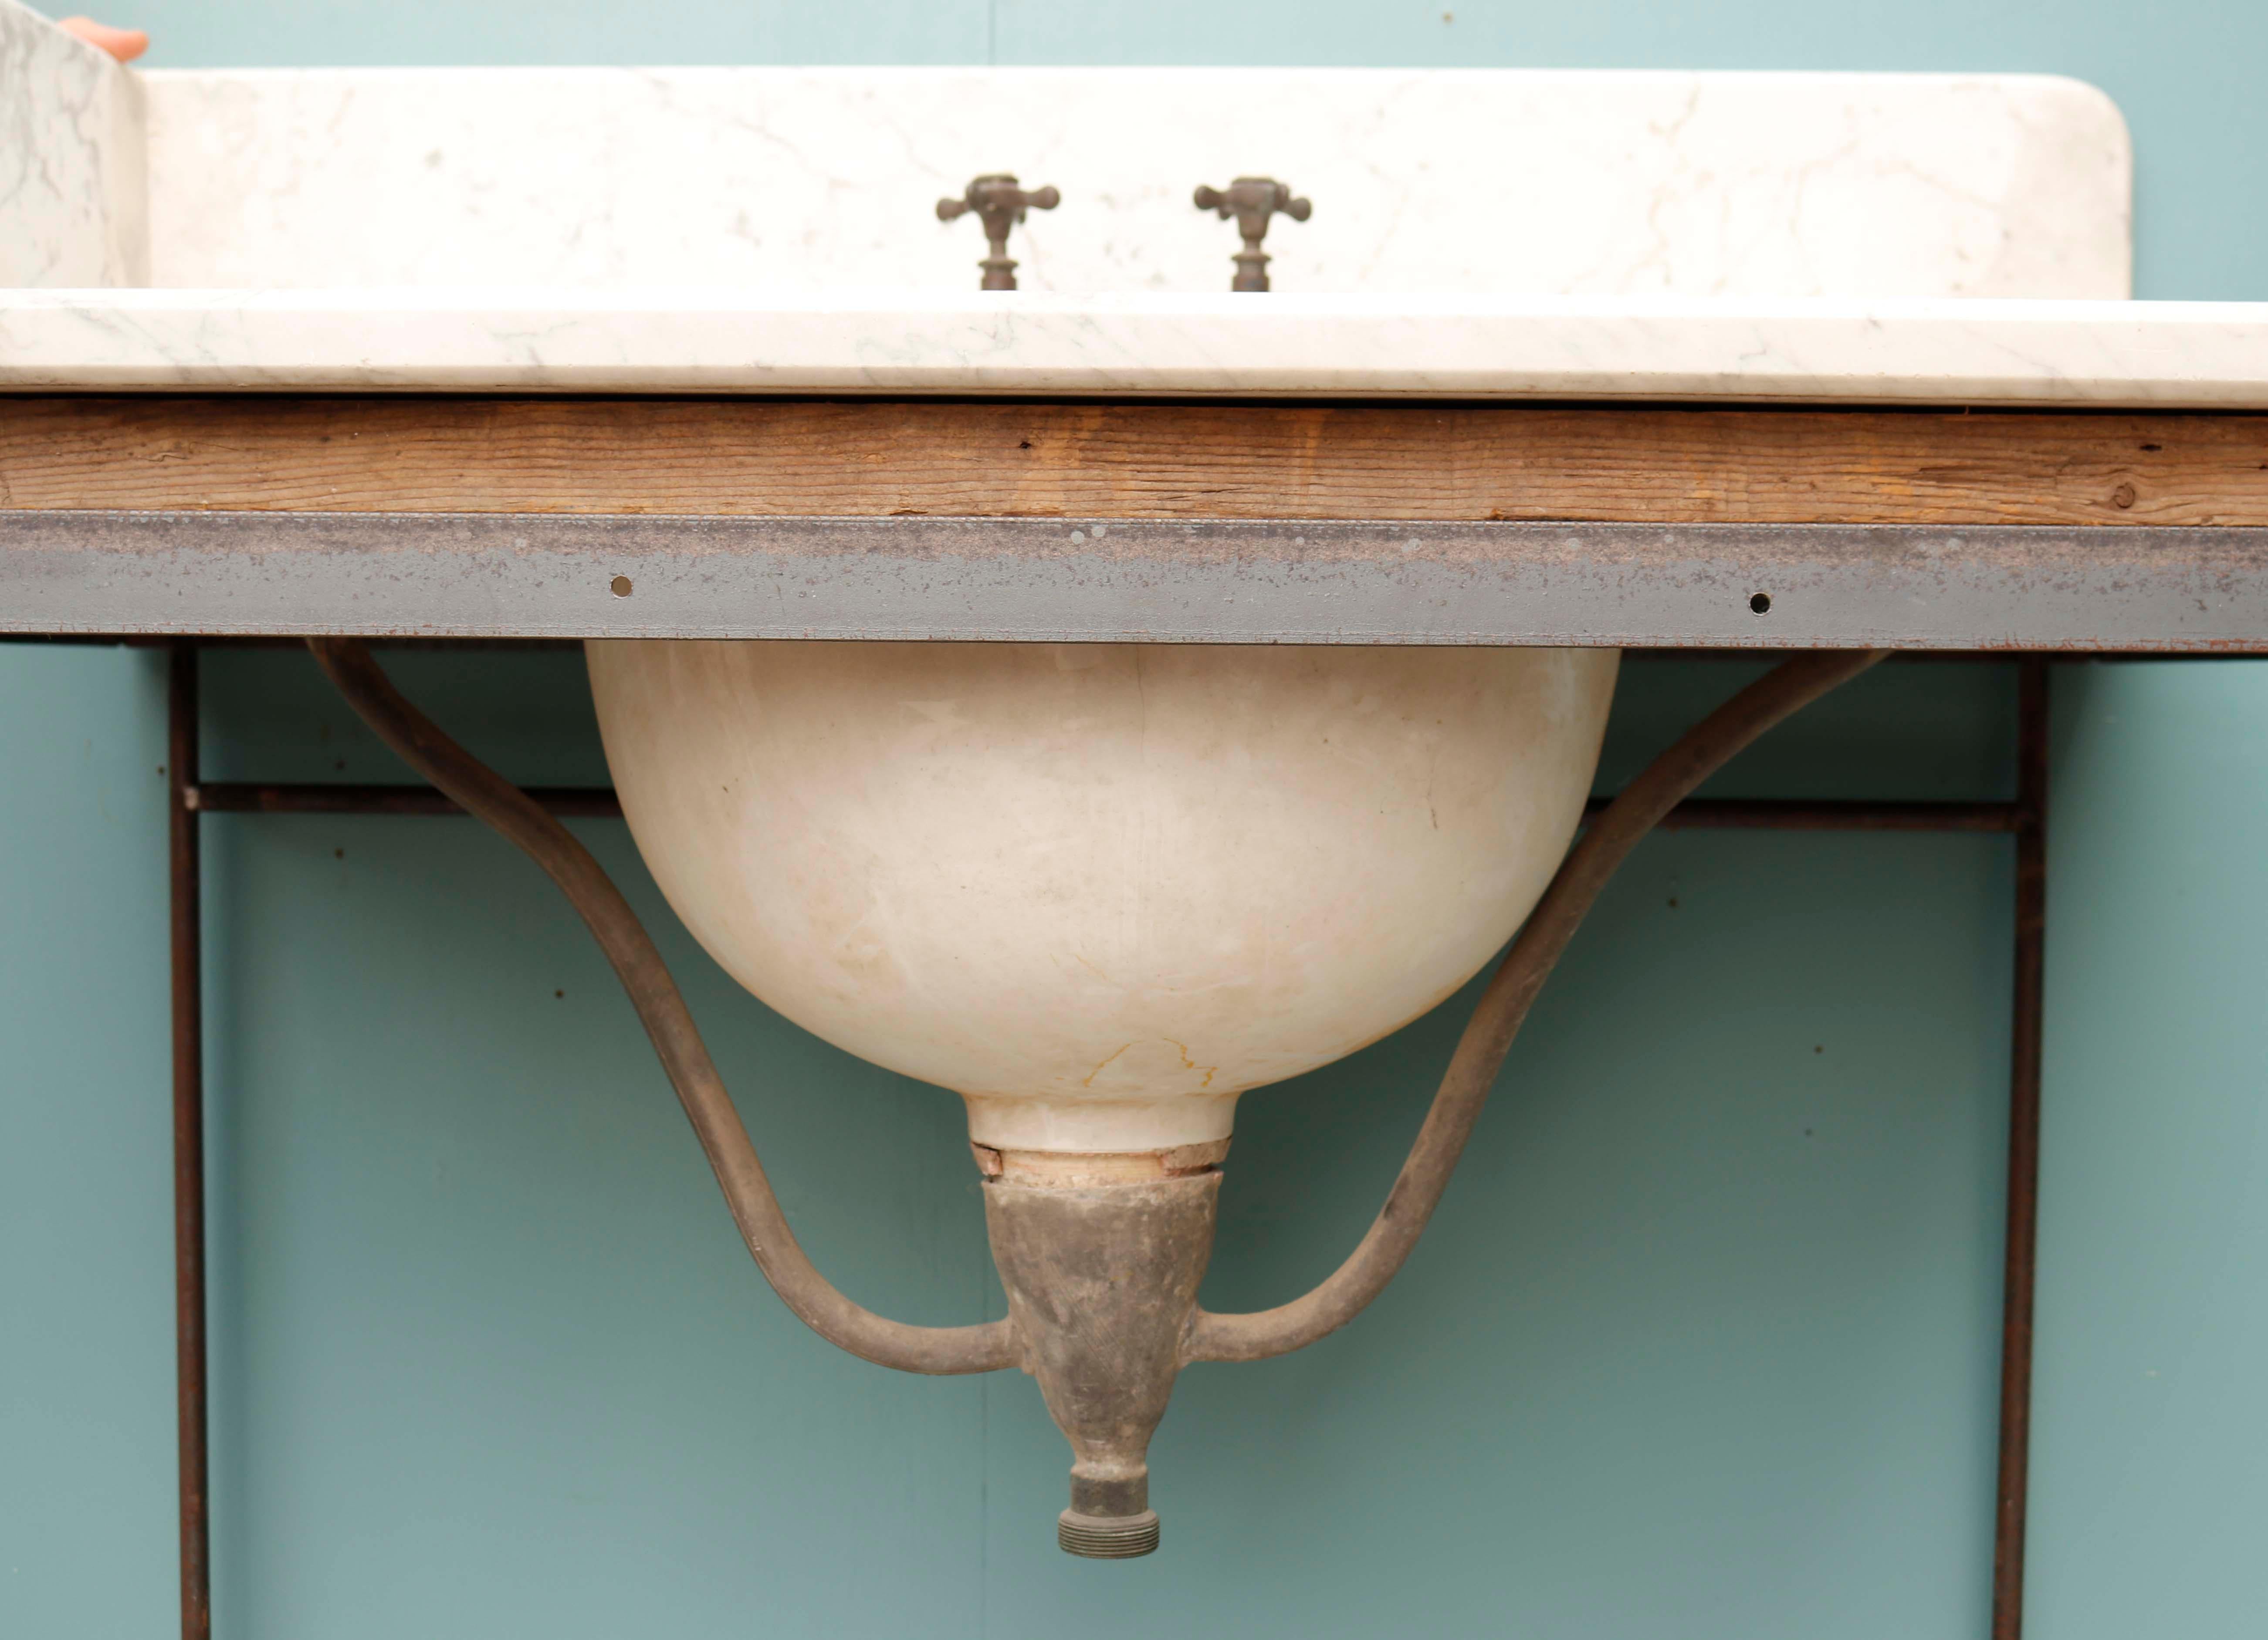 George Jennings Waschbecken aus Marmor zum Anheben. Ein von Jennings entworfenes marmoriertes Waschbecken, das neben seinen Toiletten auf der Weltausstellung von 1851 zu sehen war. Damit fällt die Herstellung dieses Produkts in die Mitte des